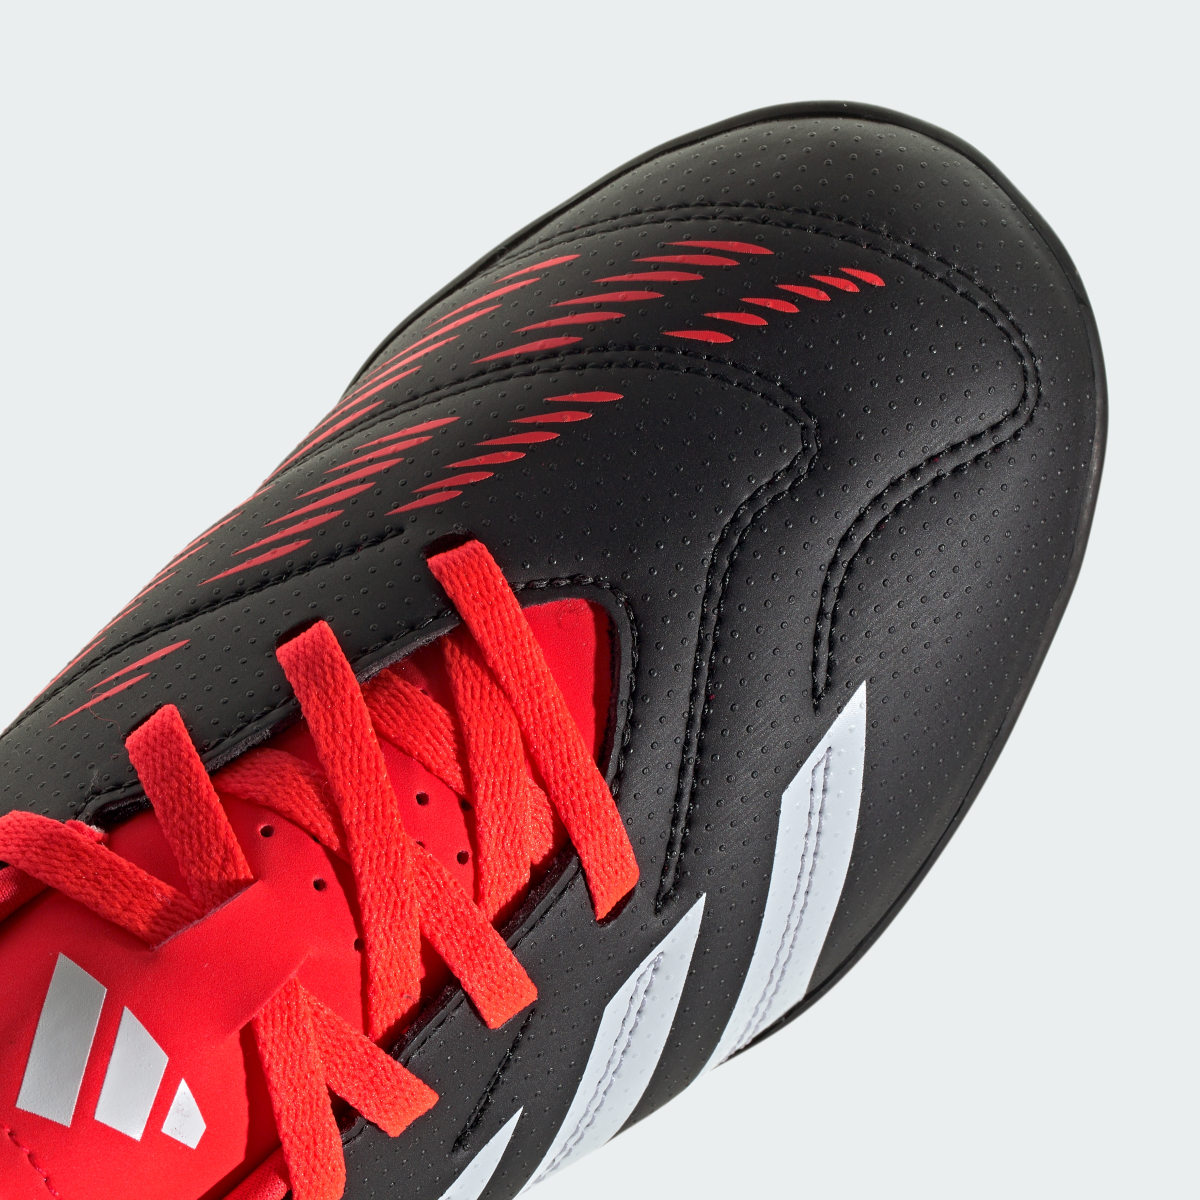 Adidas Predator Club Turf Football Boots. 9